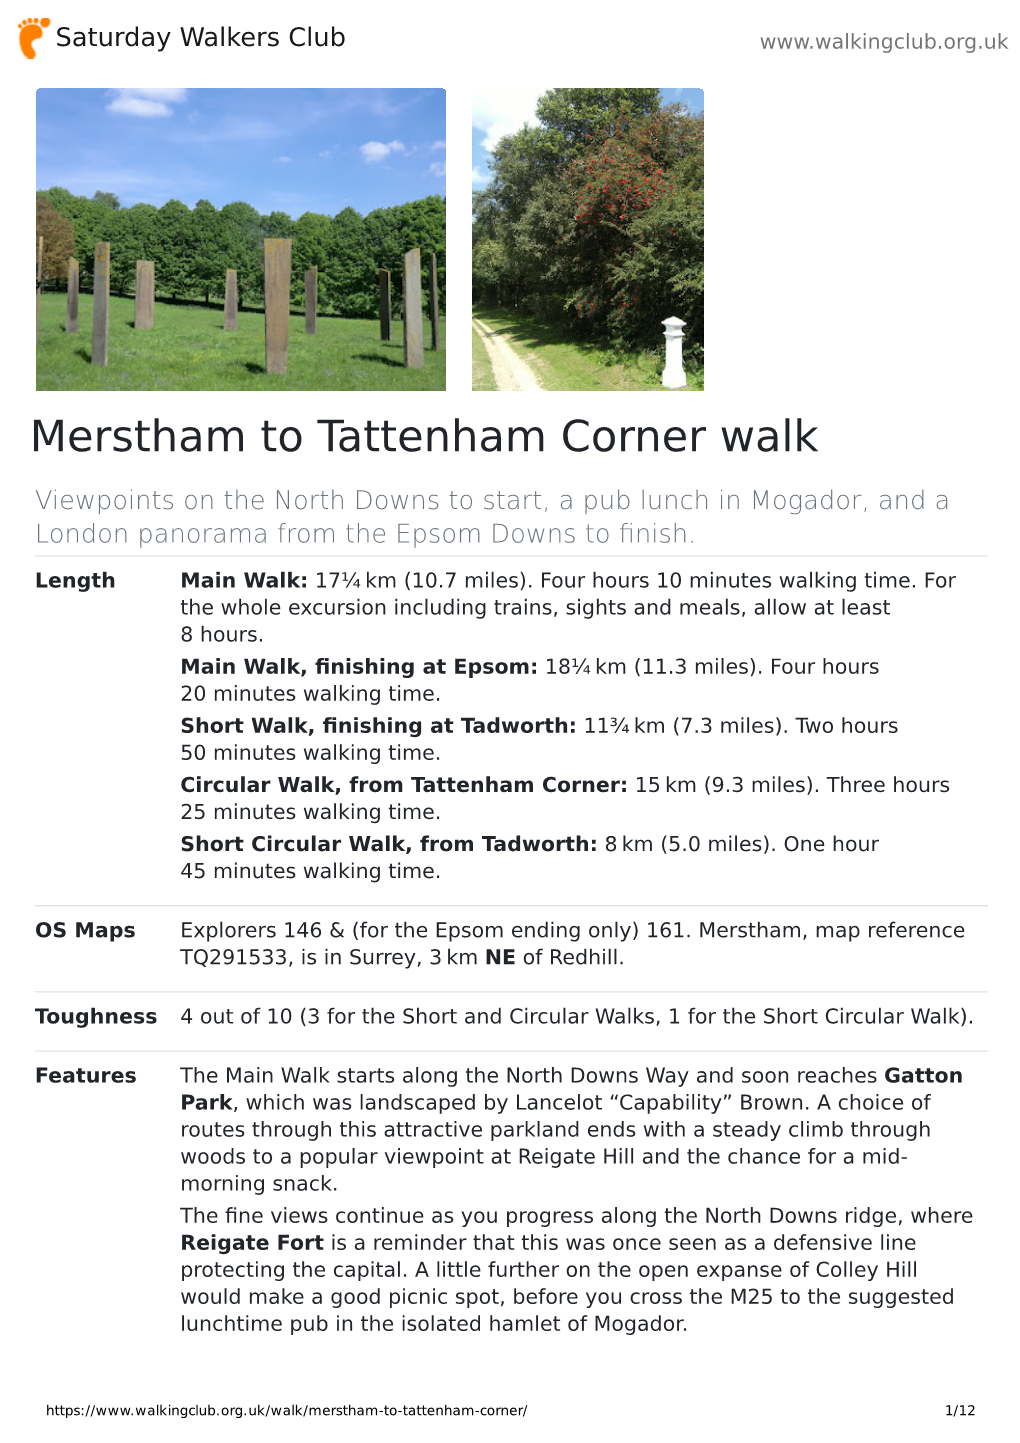 Merstham to Tattenham Corner Walk